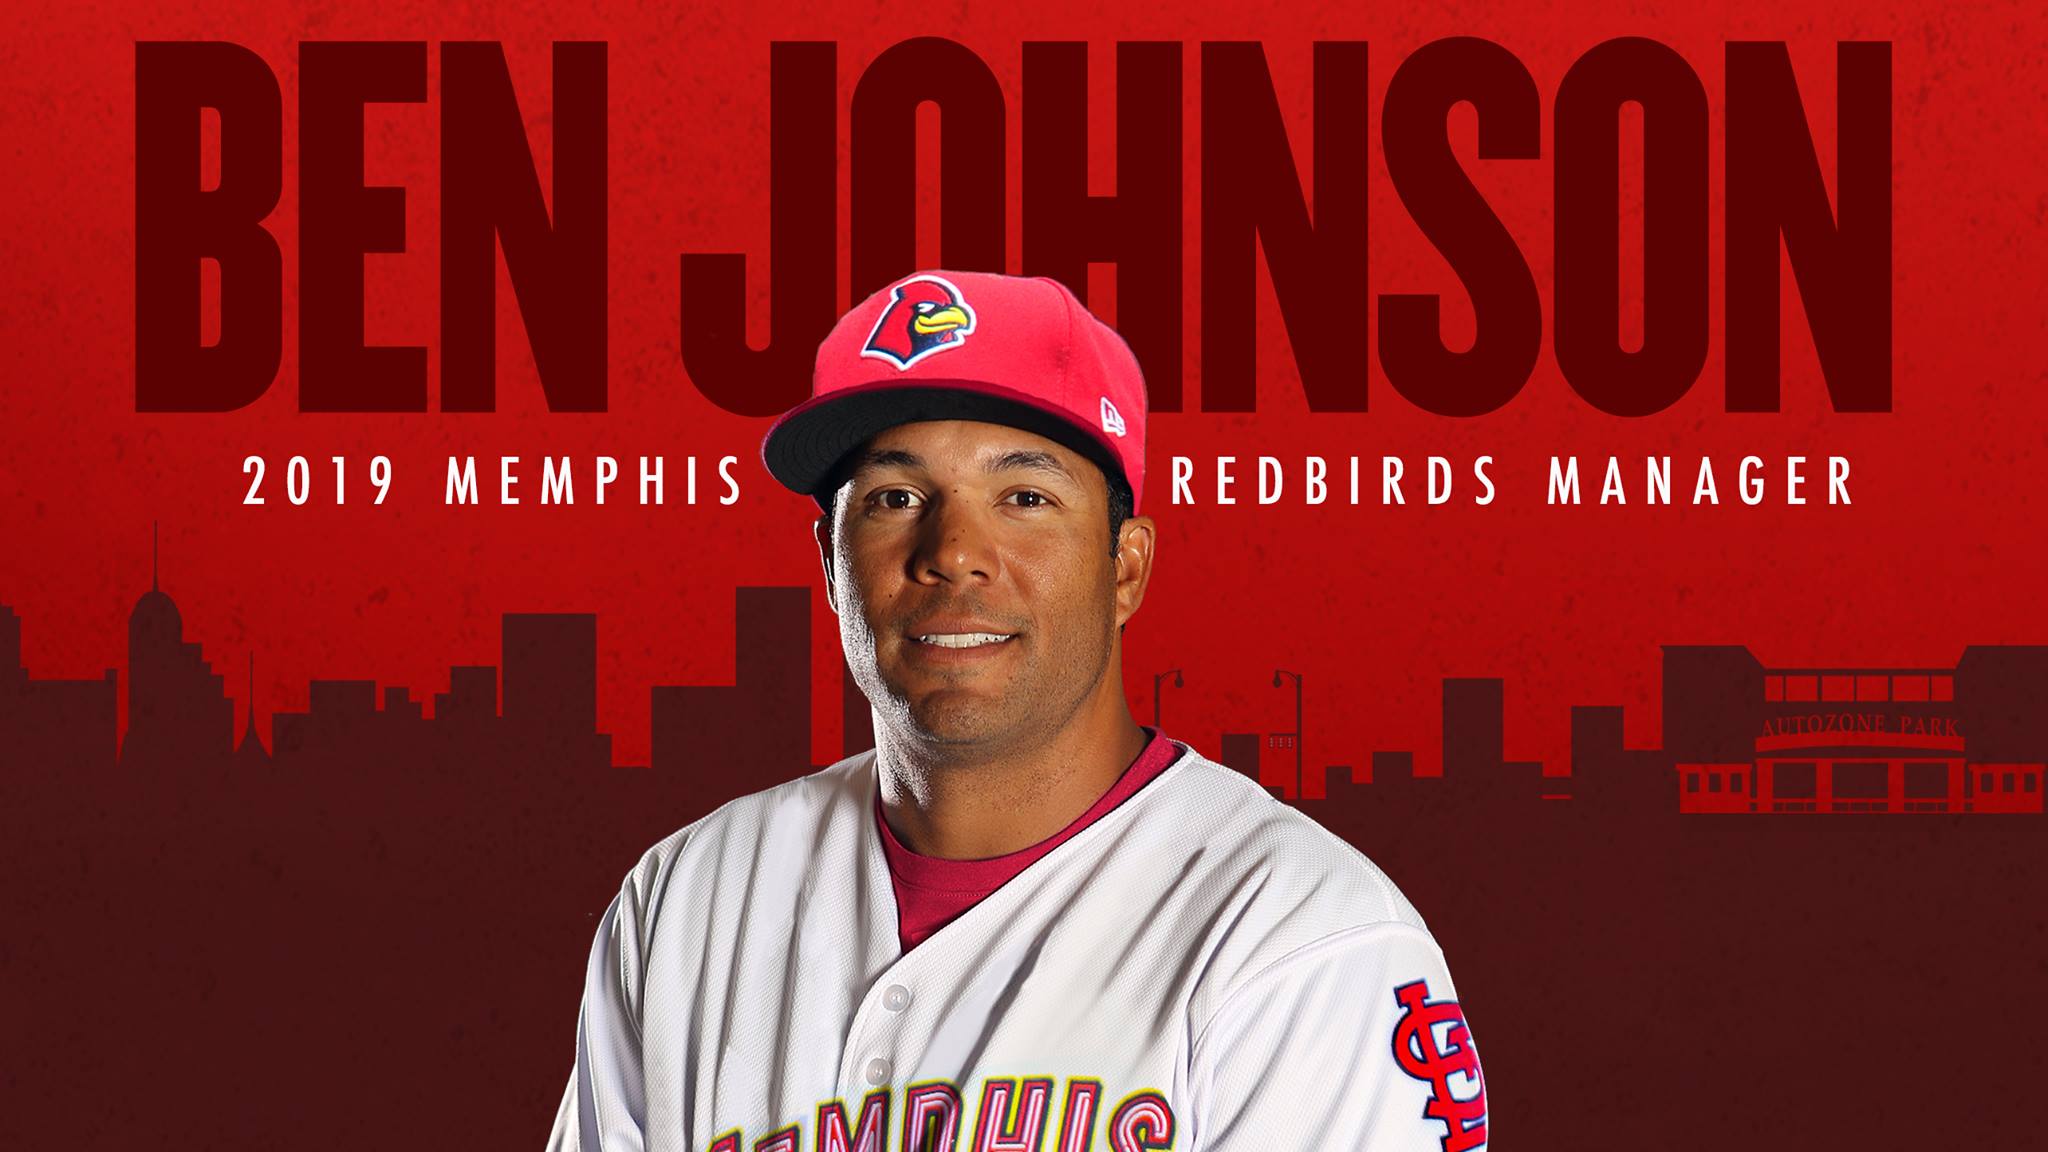 Memphis Native Ben Johnson Named Redbirds Manager | ArchCity.Media